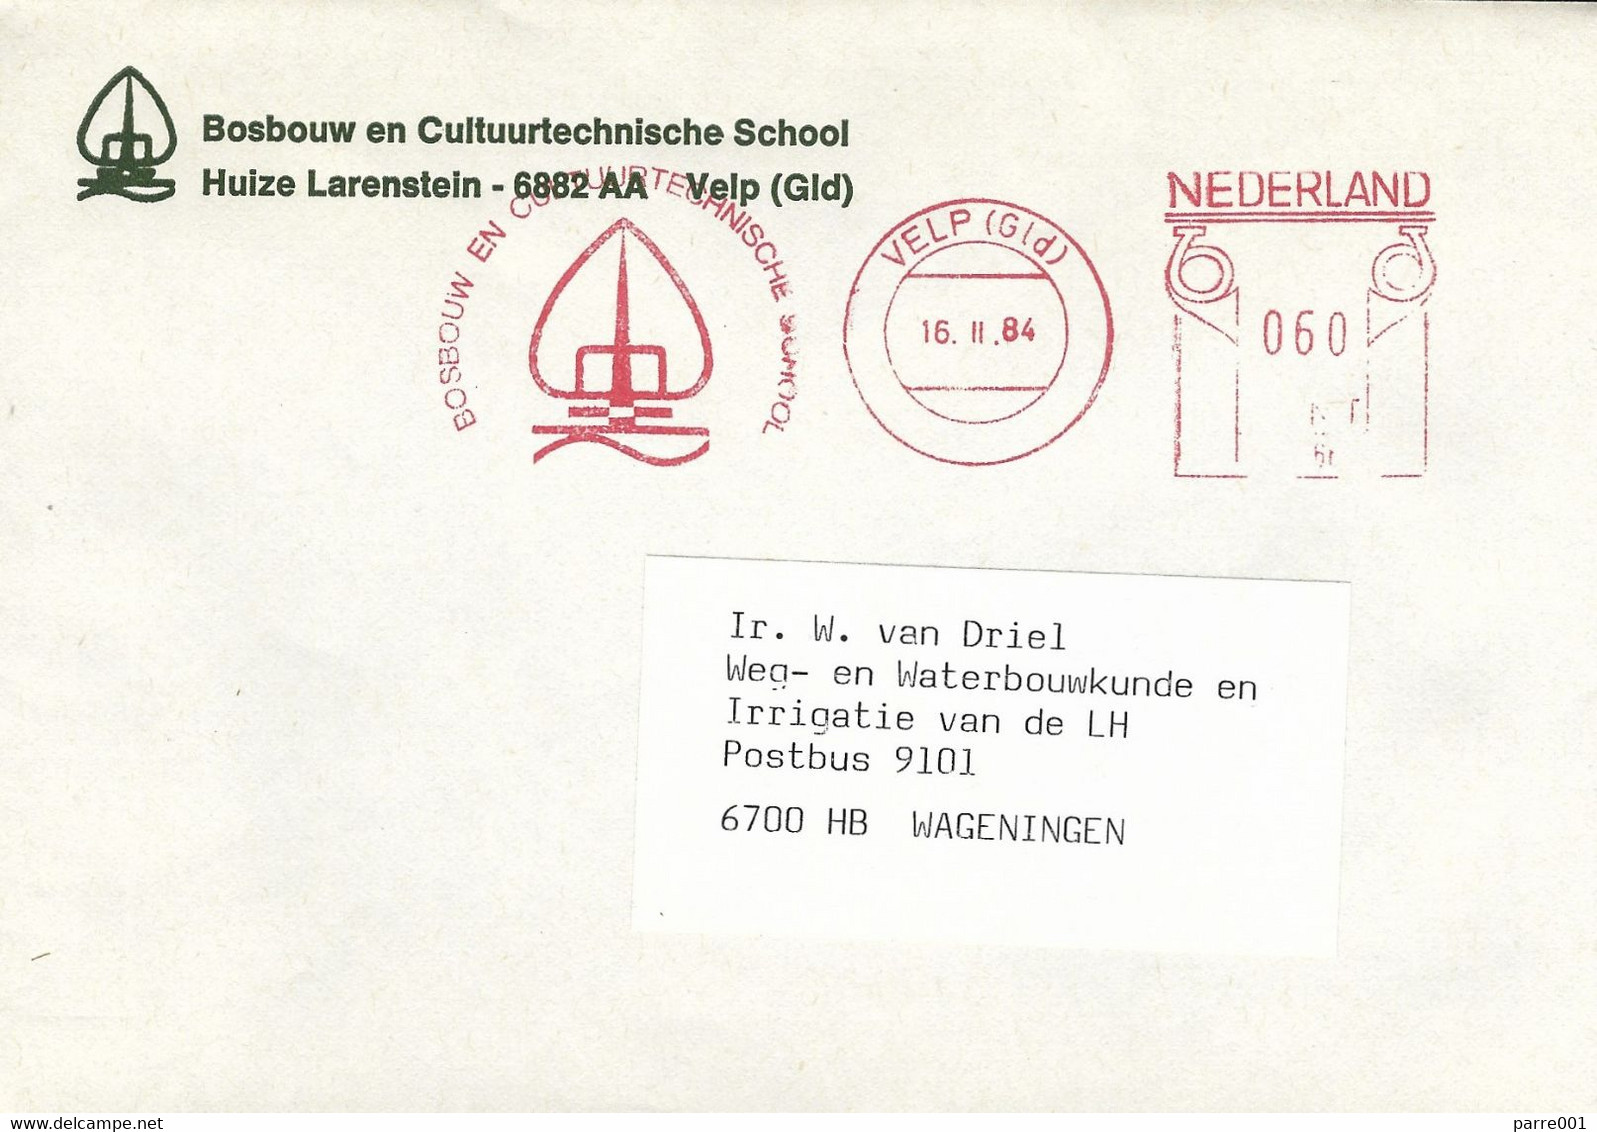 Nederland Netherlands 1984 Velp Meter Postalia “P” PR4665 Forestry School EMA Cover - Máquinas Franqueo (EMA)